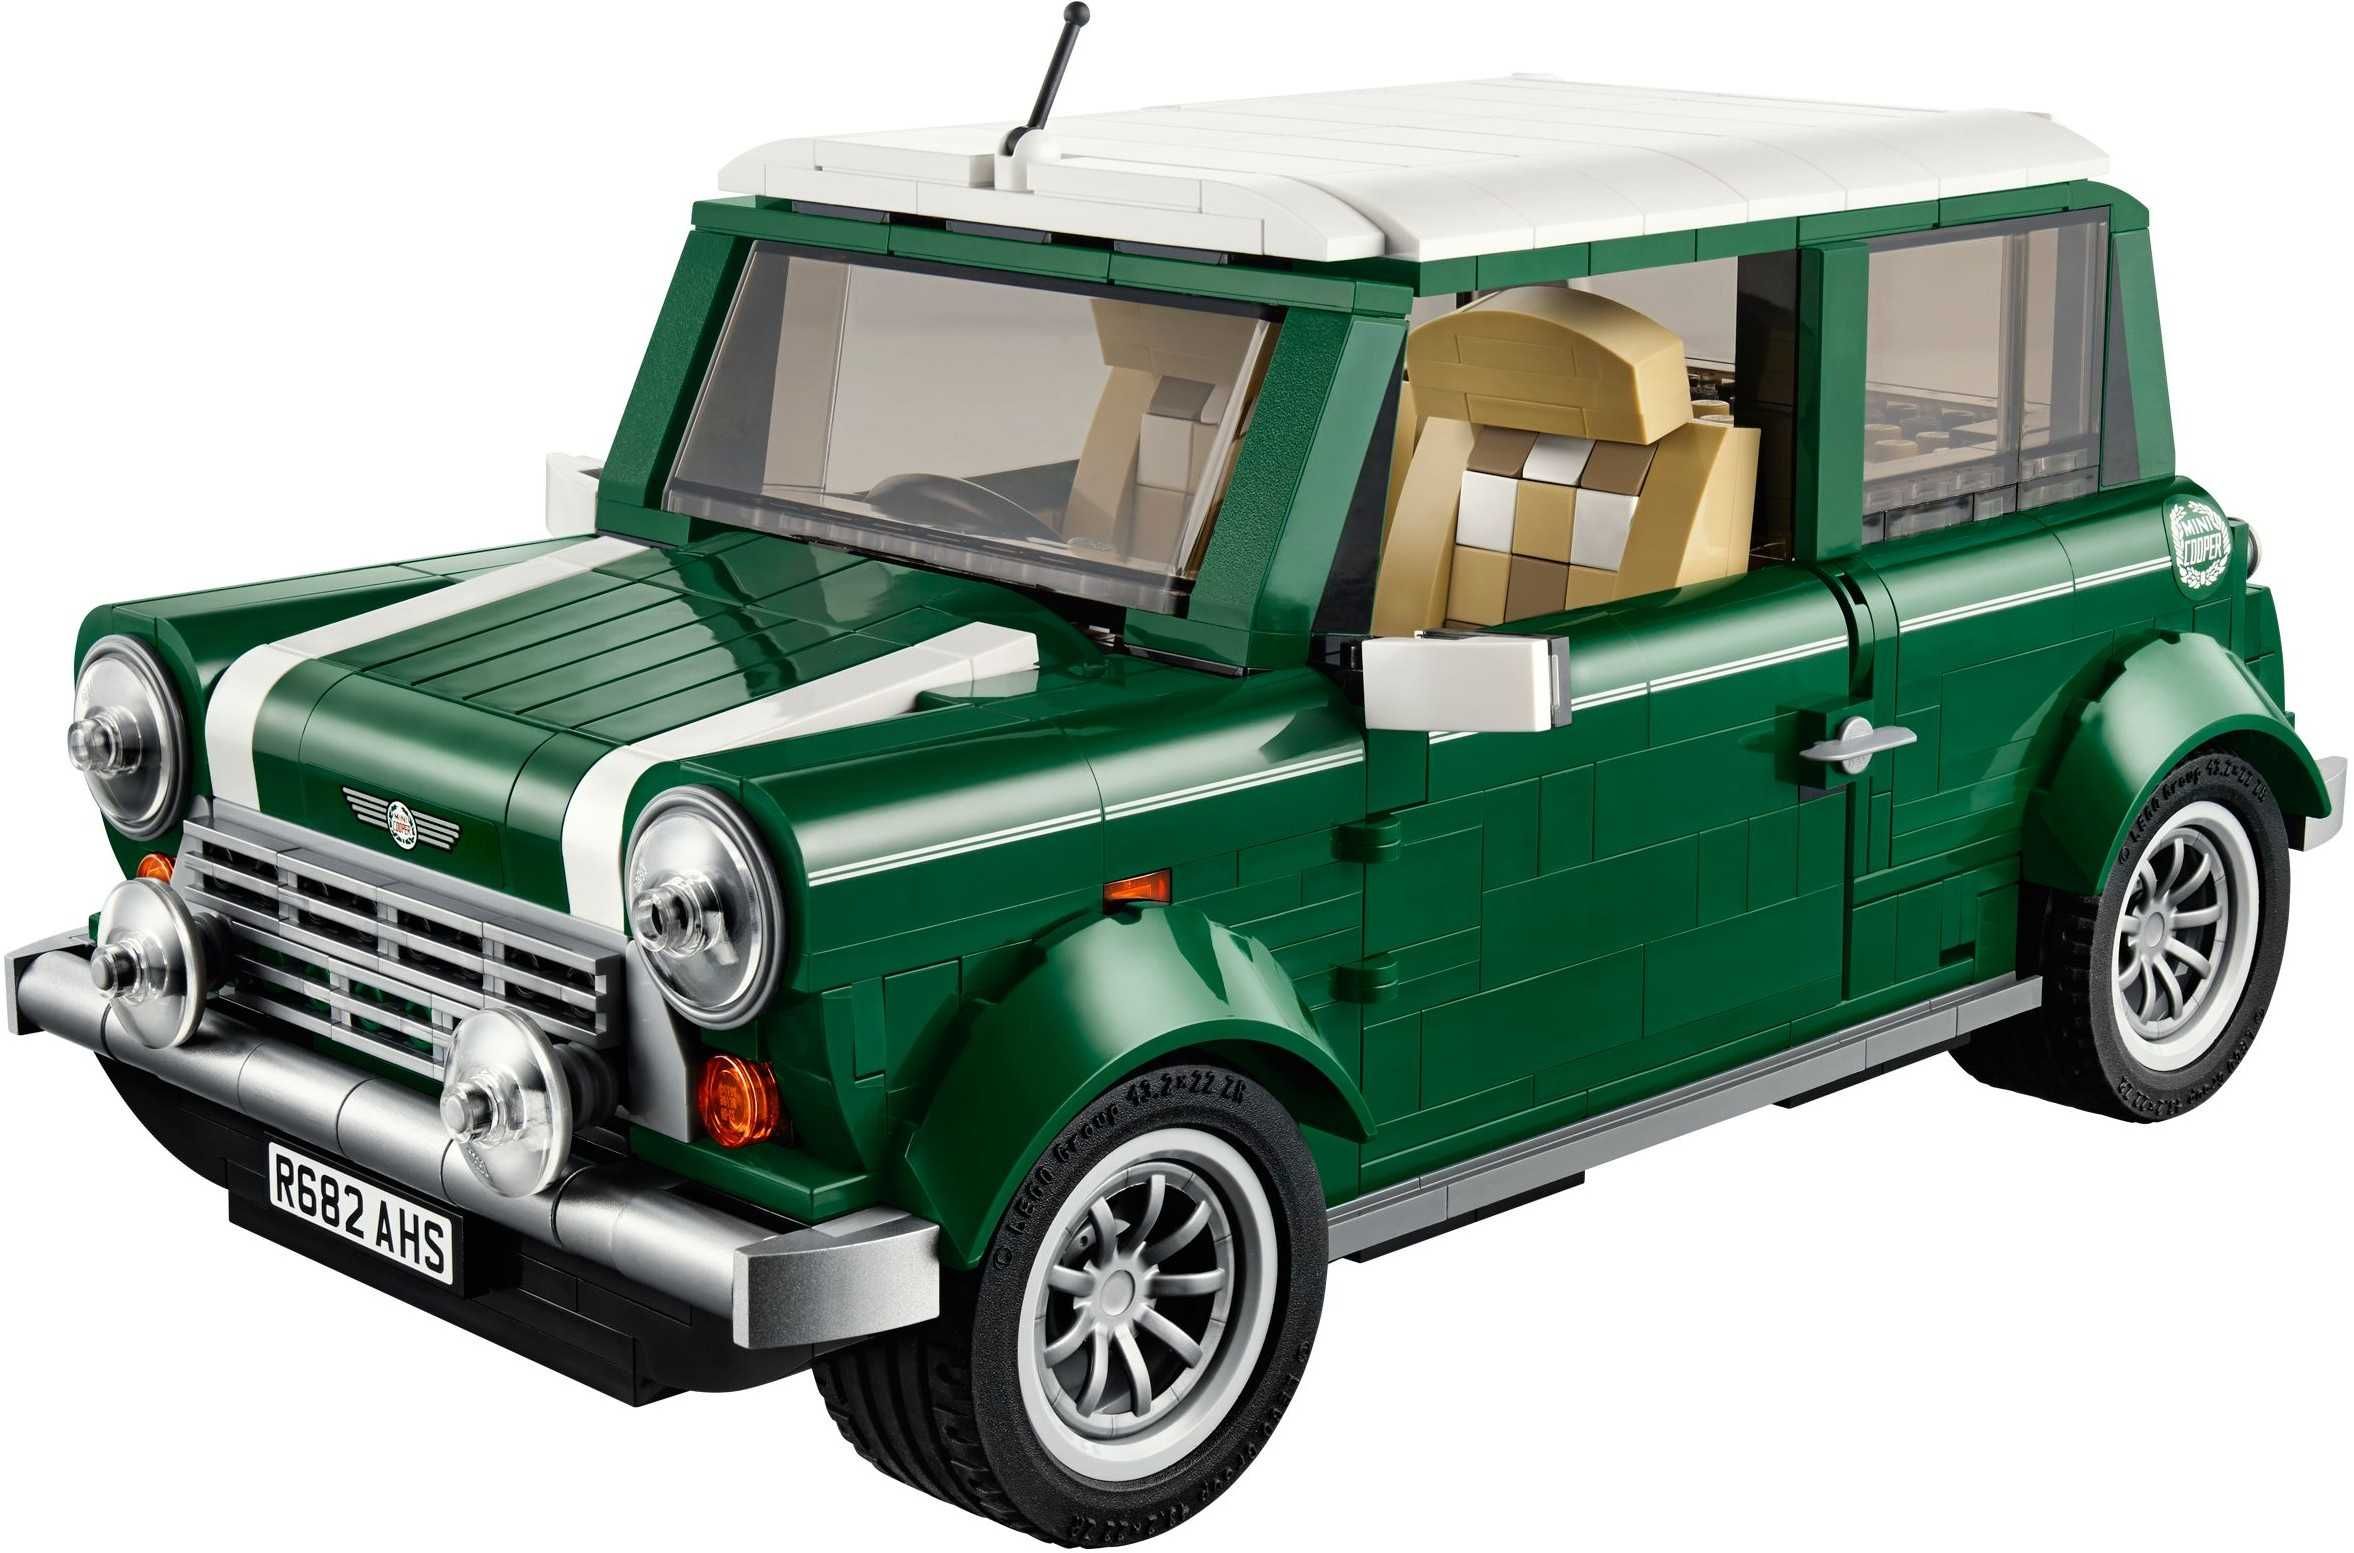 LEGO Creator Expert / Icons- 10242: MINI Cooper MK -set greu de gasit